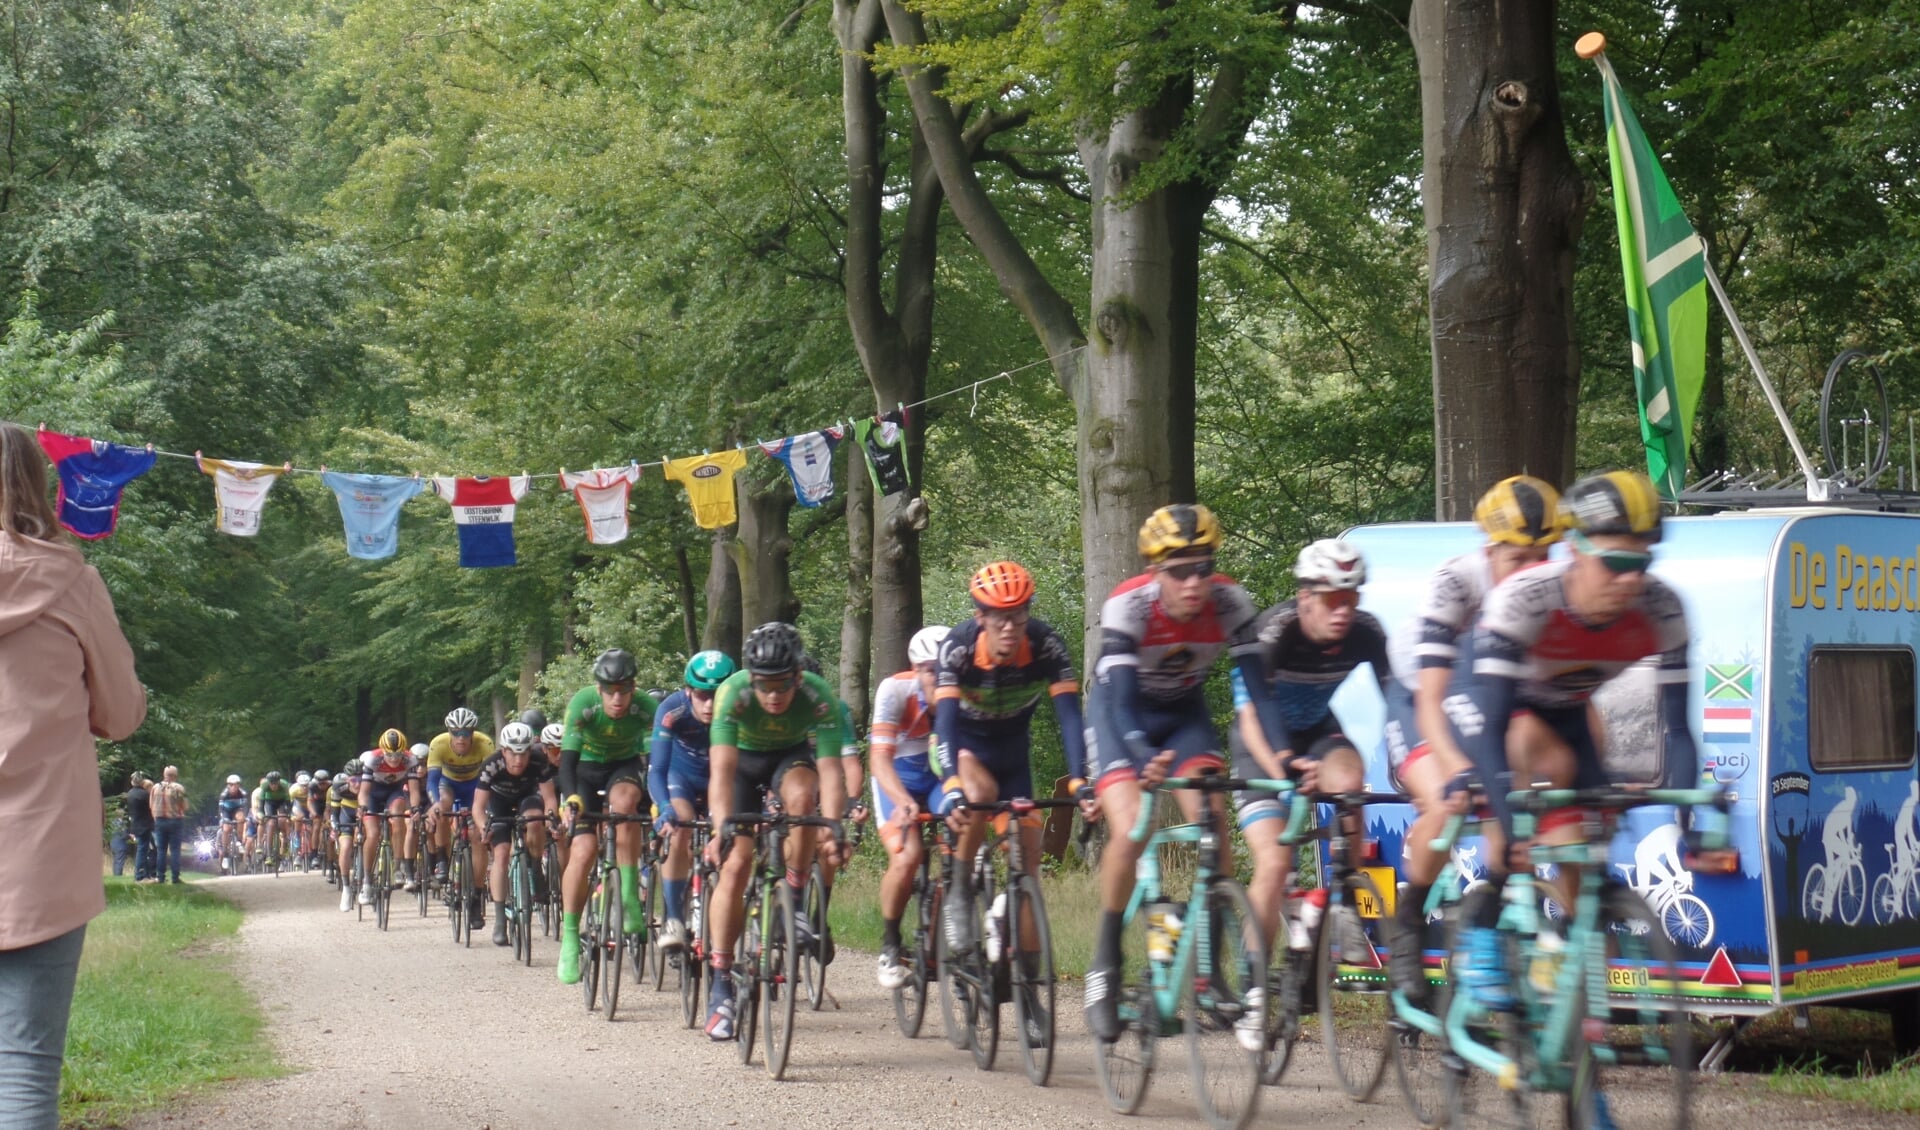 Met de opgehangen wielershirts en sfeeracties heerste er een Tour de France-sfeertje in De Wiersse. Foto: Jan Hendriksen, 